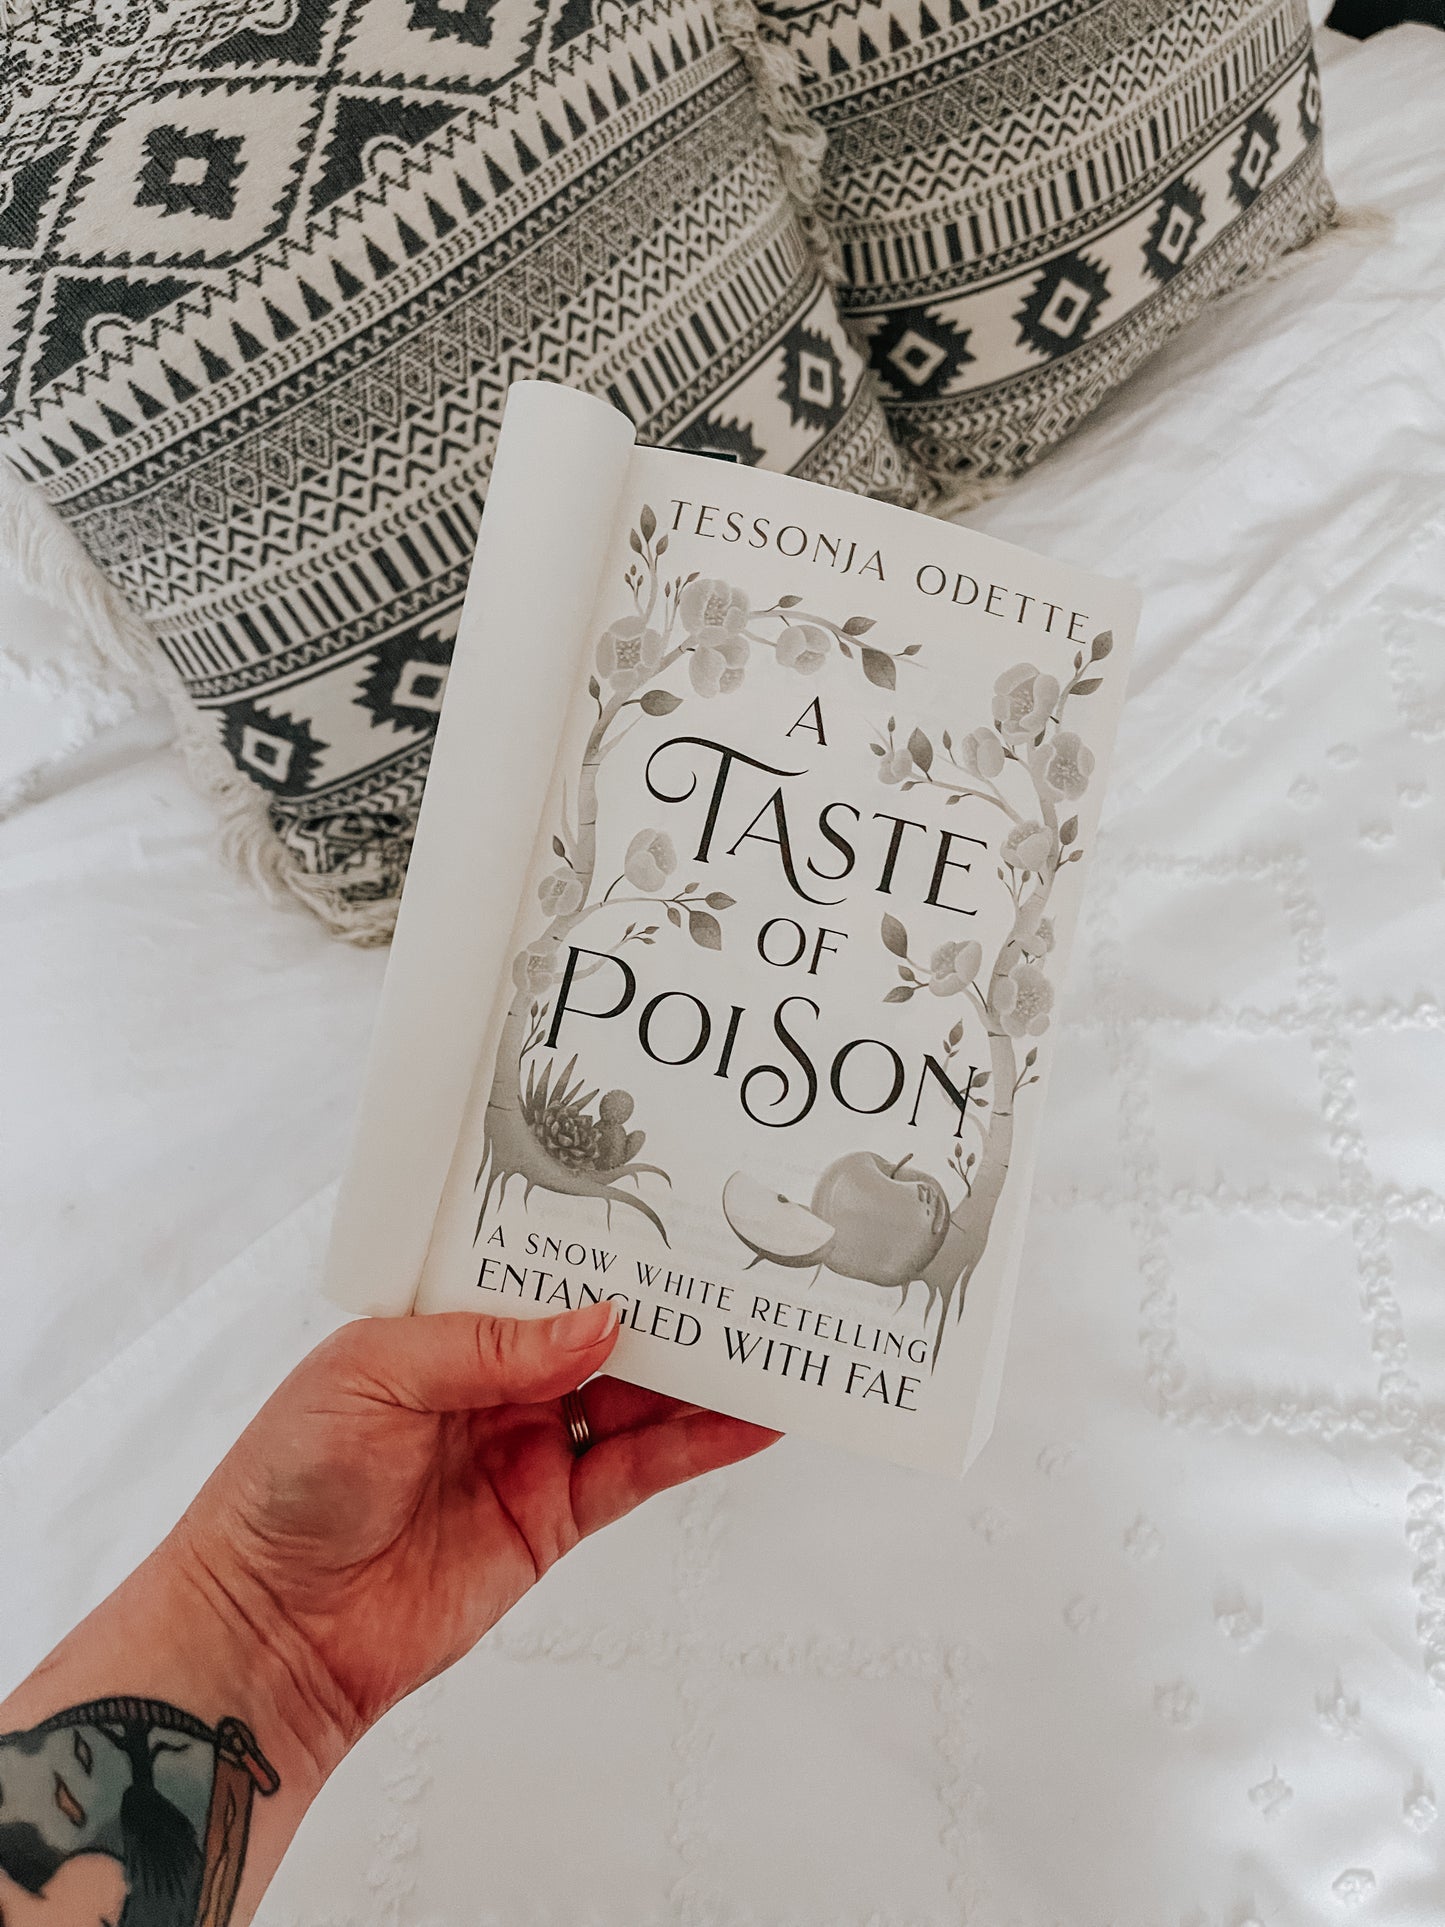 A Taste of Poison (paperback) signed